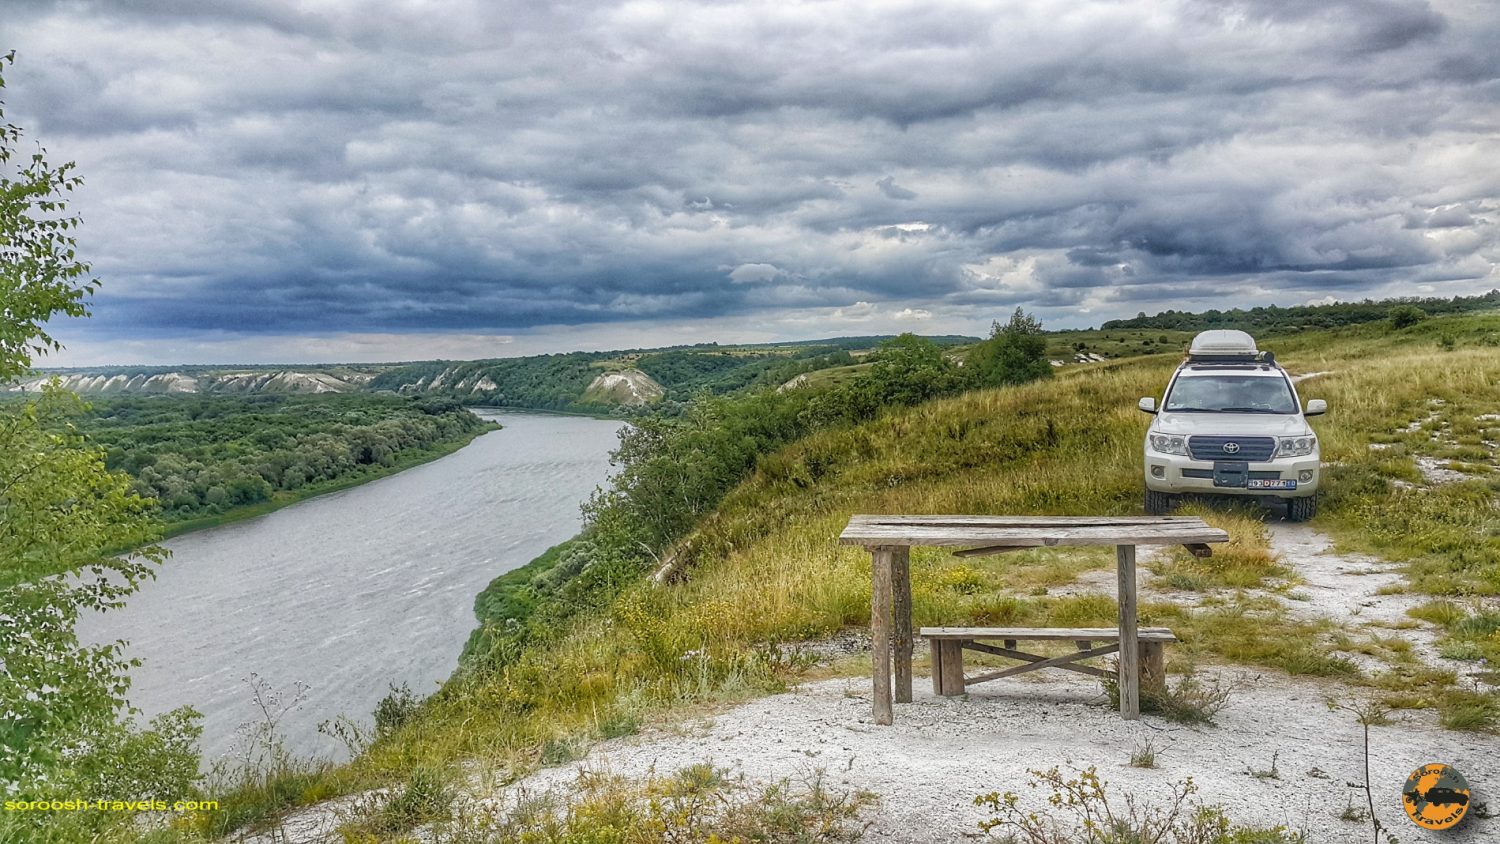 رودخانه دون در مسیر کامنسک شاختینسکی - روسیه - تابستان 1398 2019